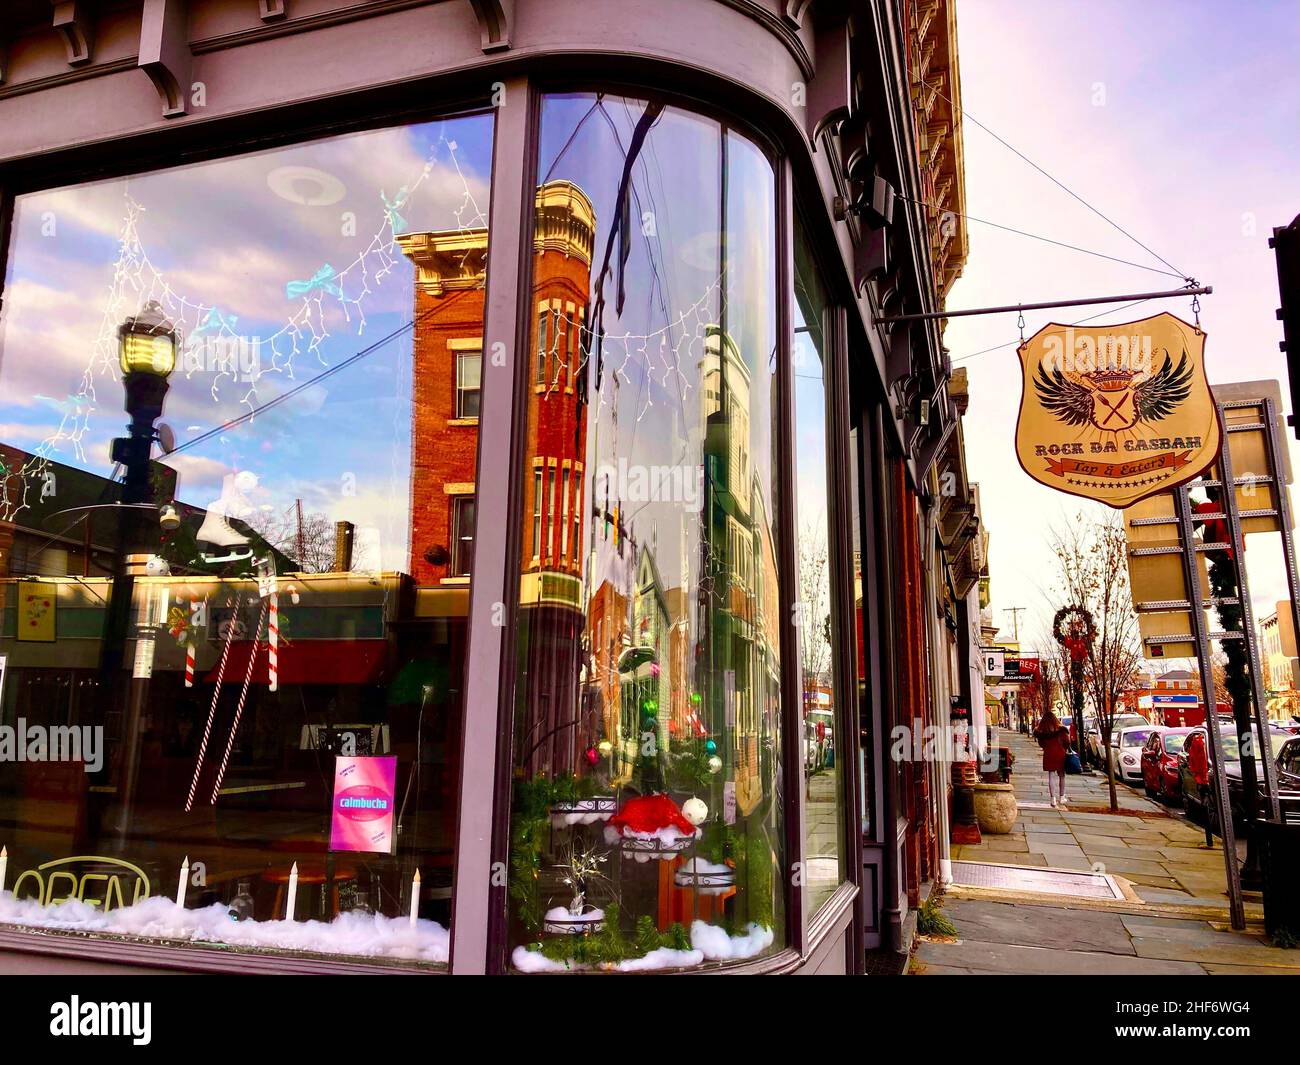 Petite ville USA.Saugerties, NY. La fenêtre ronde de la boutique d'angle permettant aux passants de voir les méprises de tous les angles Banque D'Images